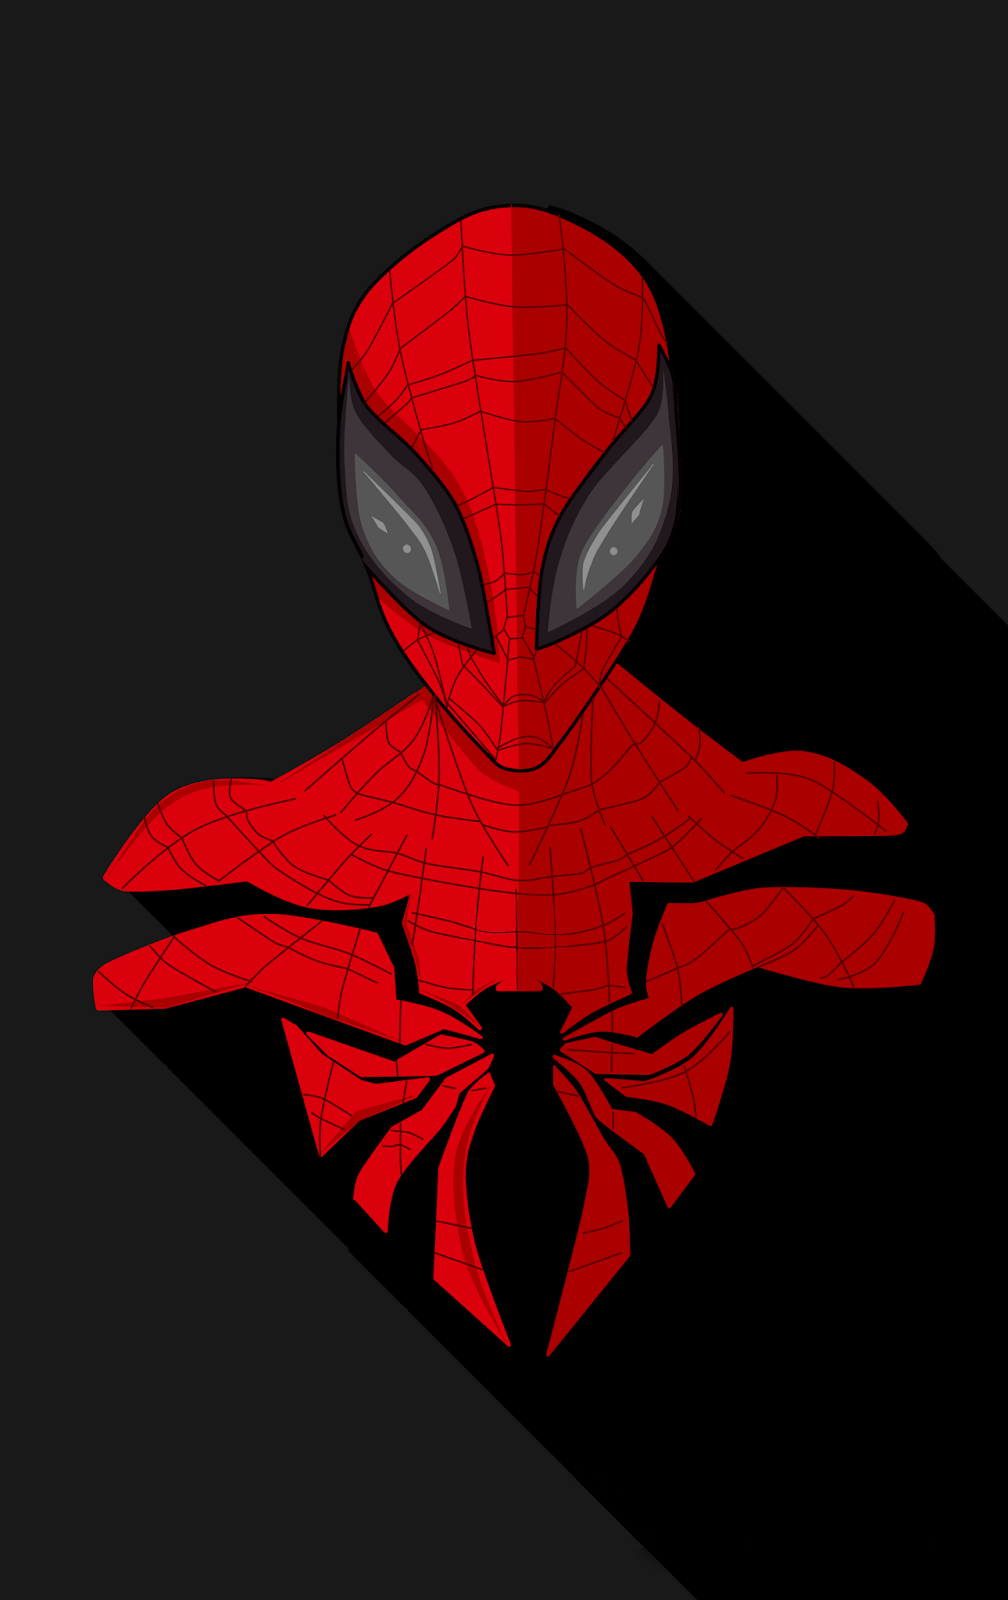 Spider Man Wallpaper Minimalist, HD Wallpaper & background